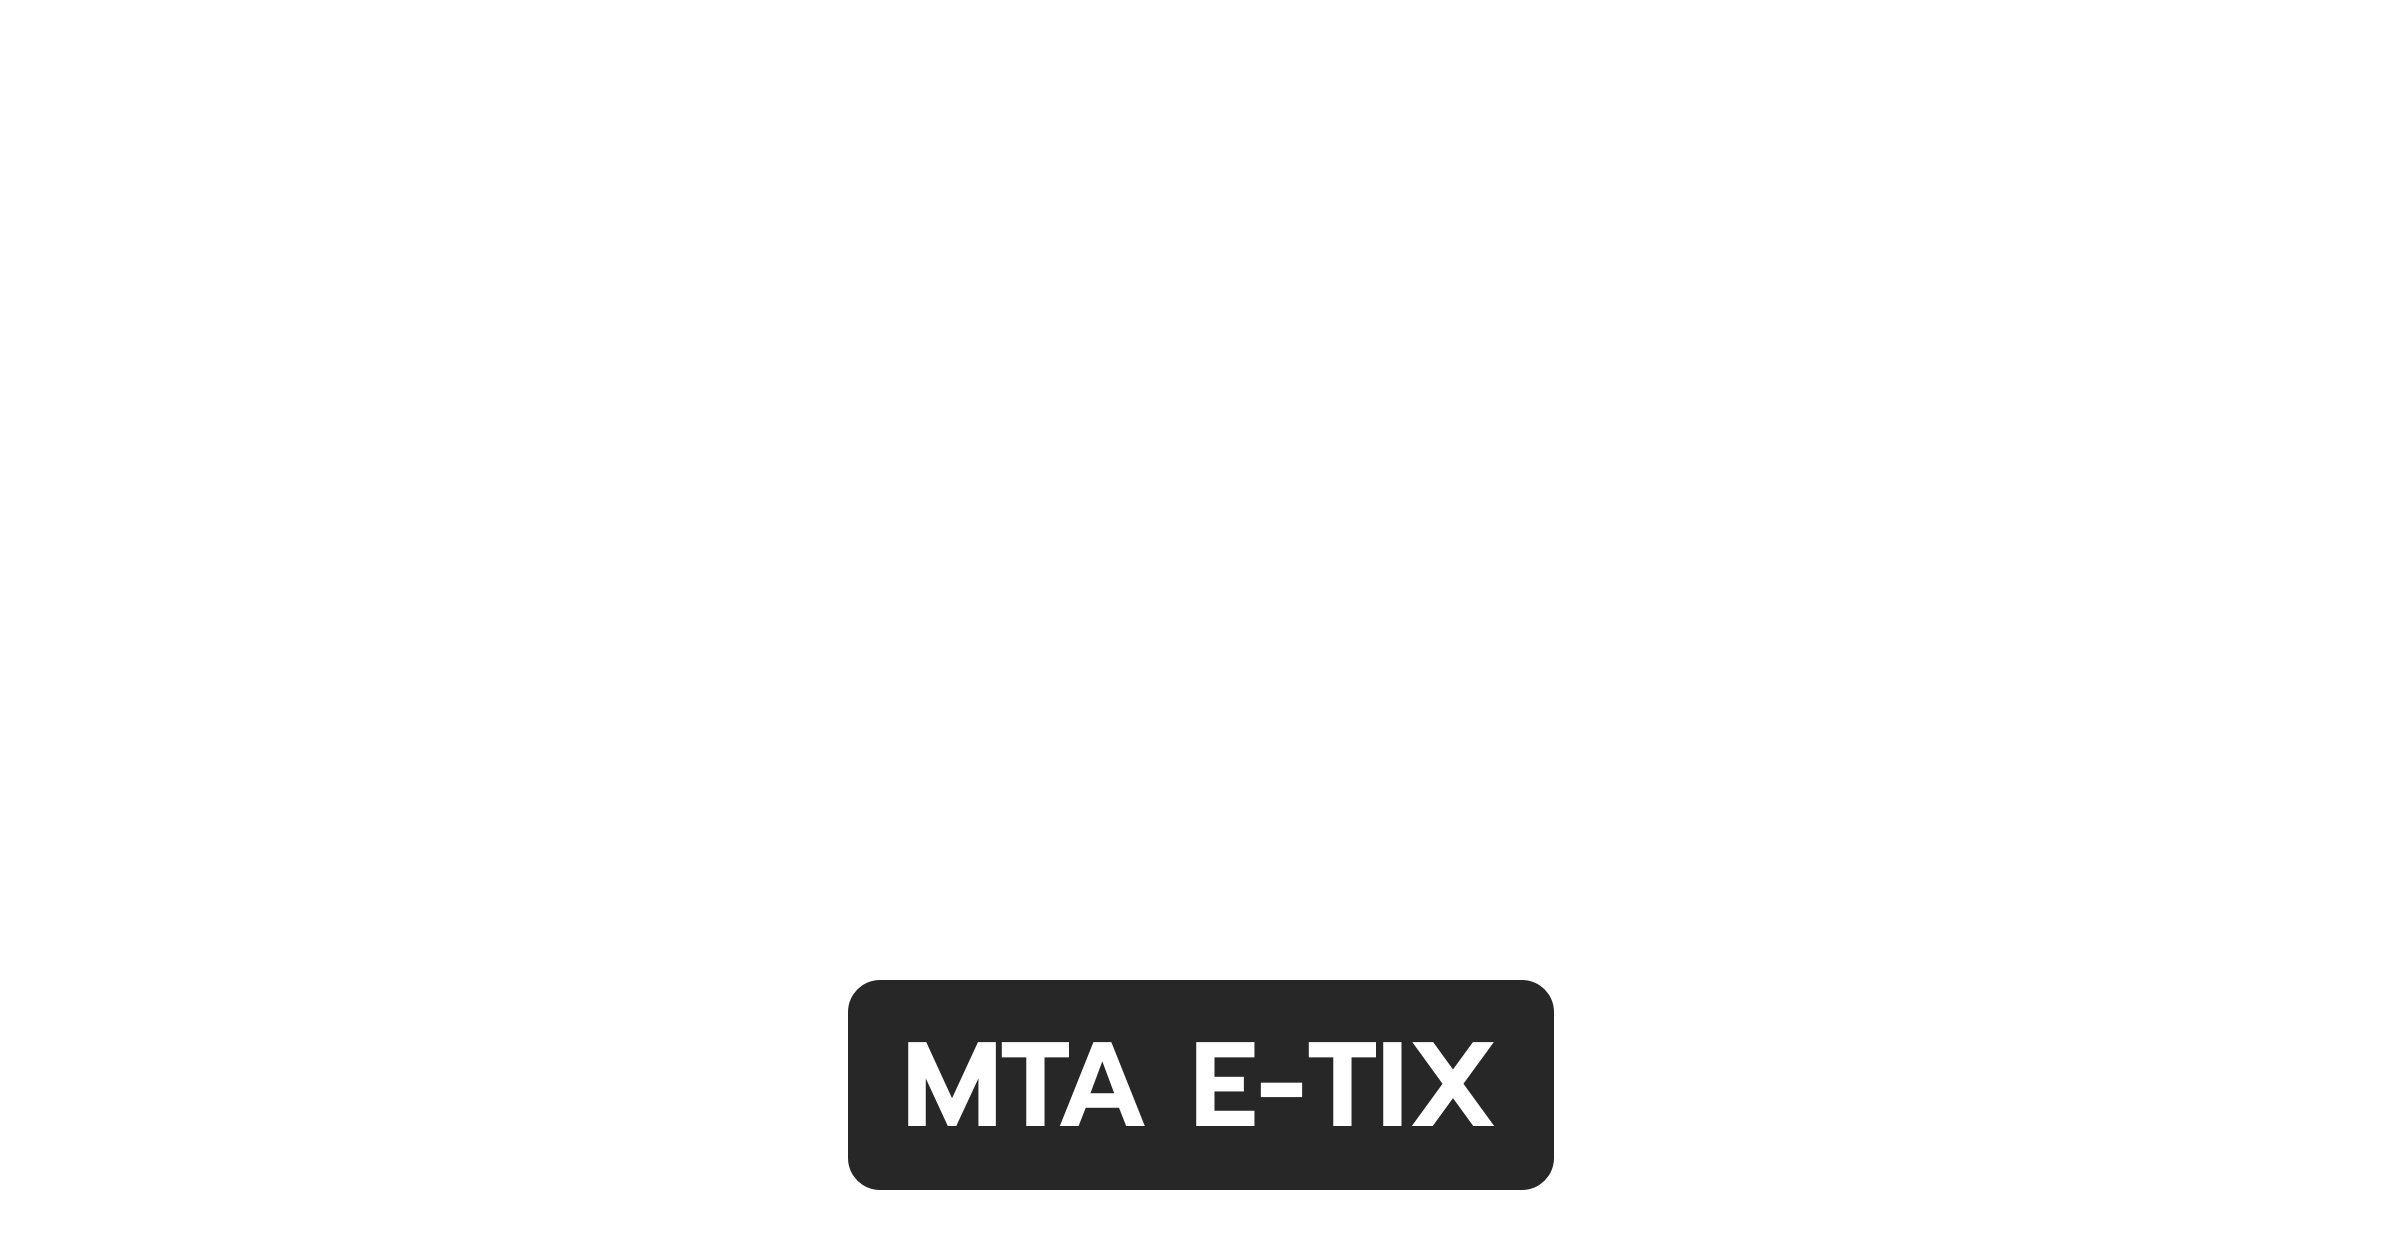 MTA E-TIX